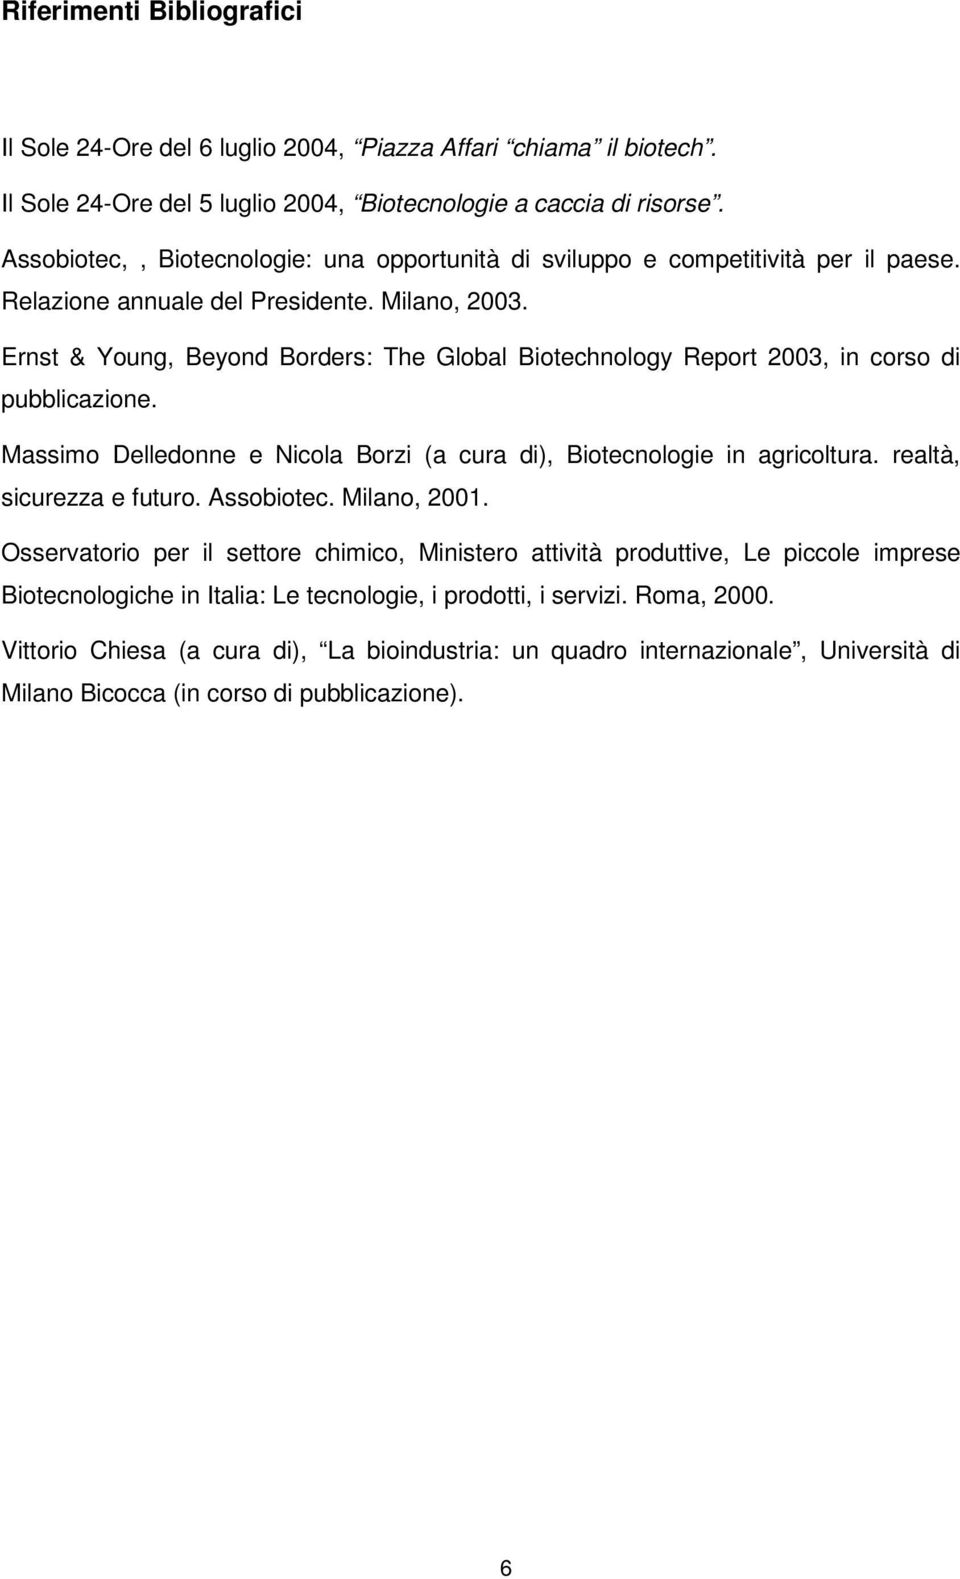 Ernst & Young, Beyond Borders: The Global Biotechnology Report 2003, in corso di pubblicazione. Massimo Delledonne e Nicola Borzi (a cura di), Biotecnologie in agricoltura. realtà, sicurezza e futuro.